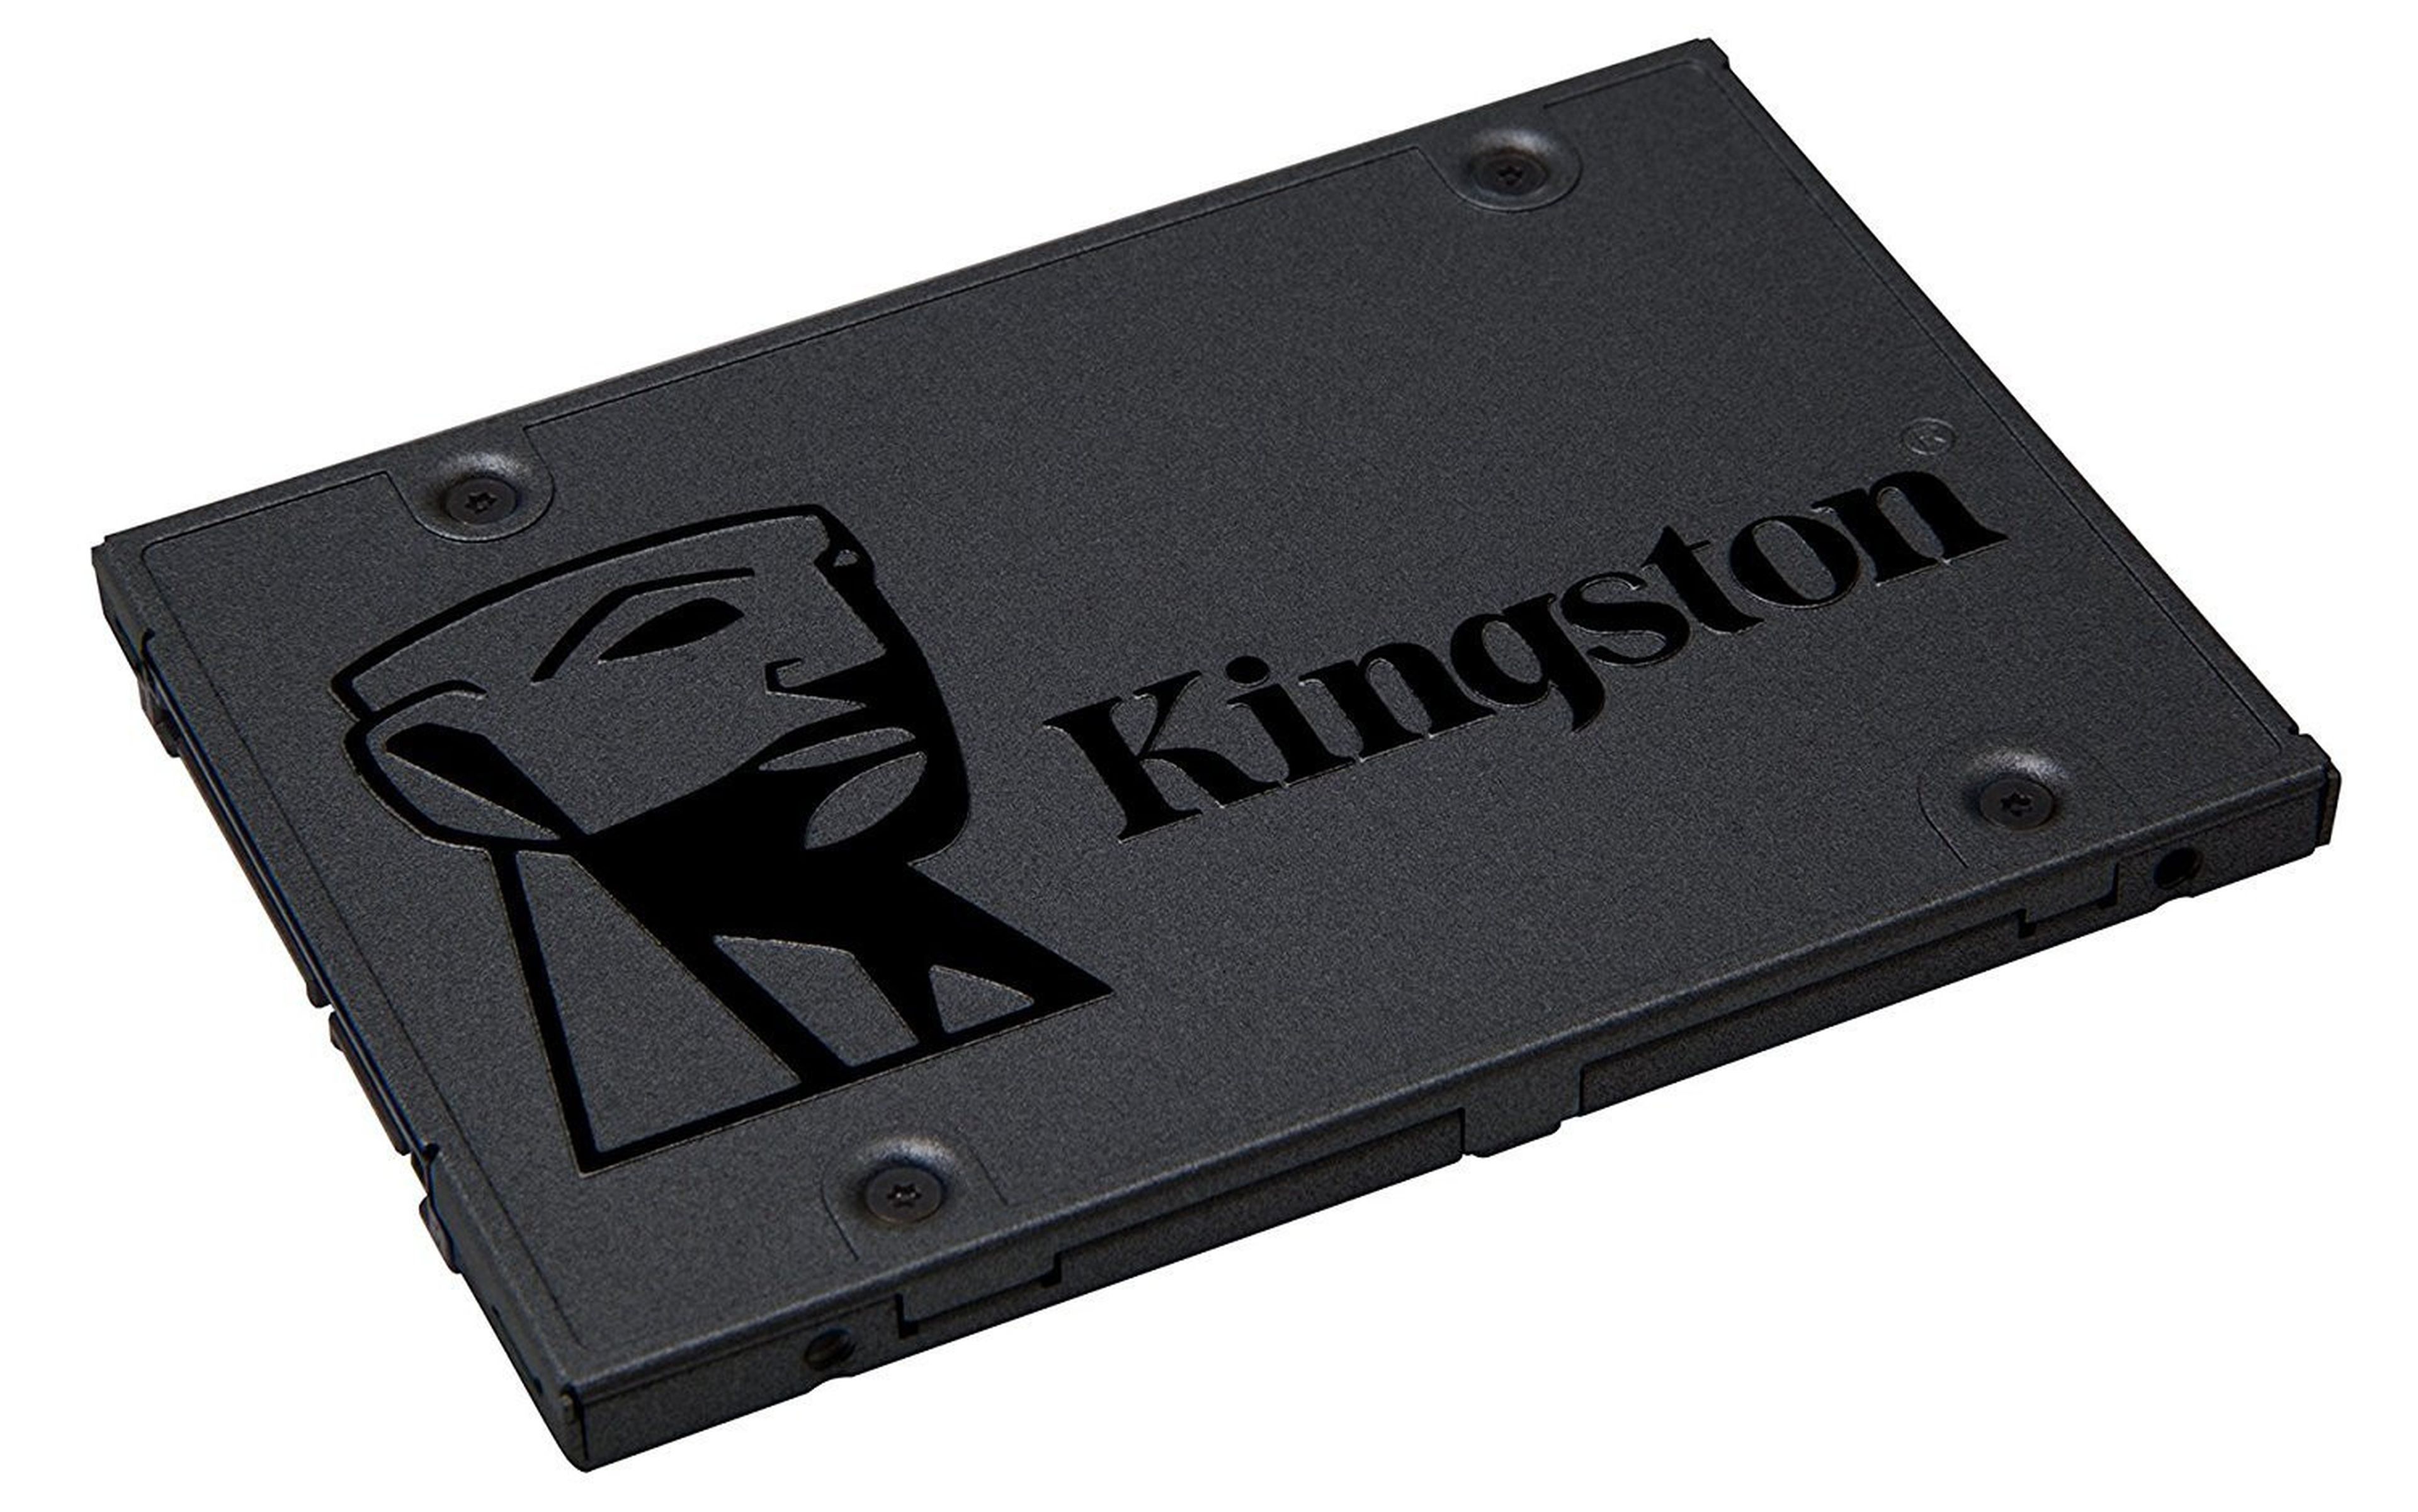 Los mejores SSD que puedes comprar ahora mismo